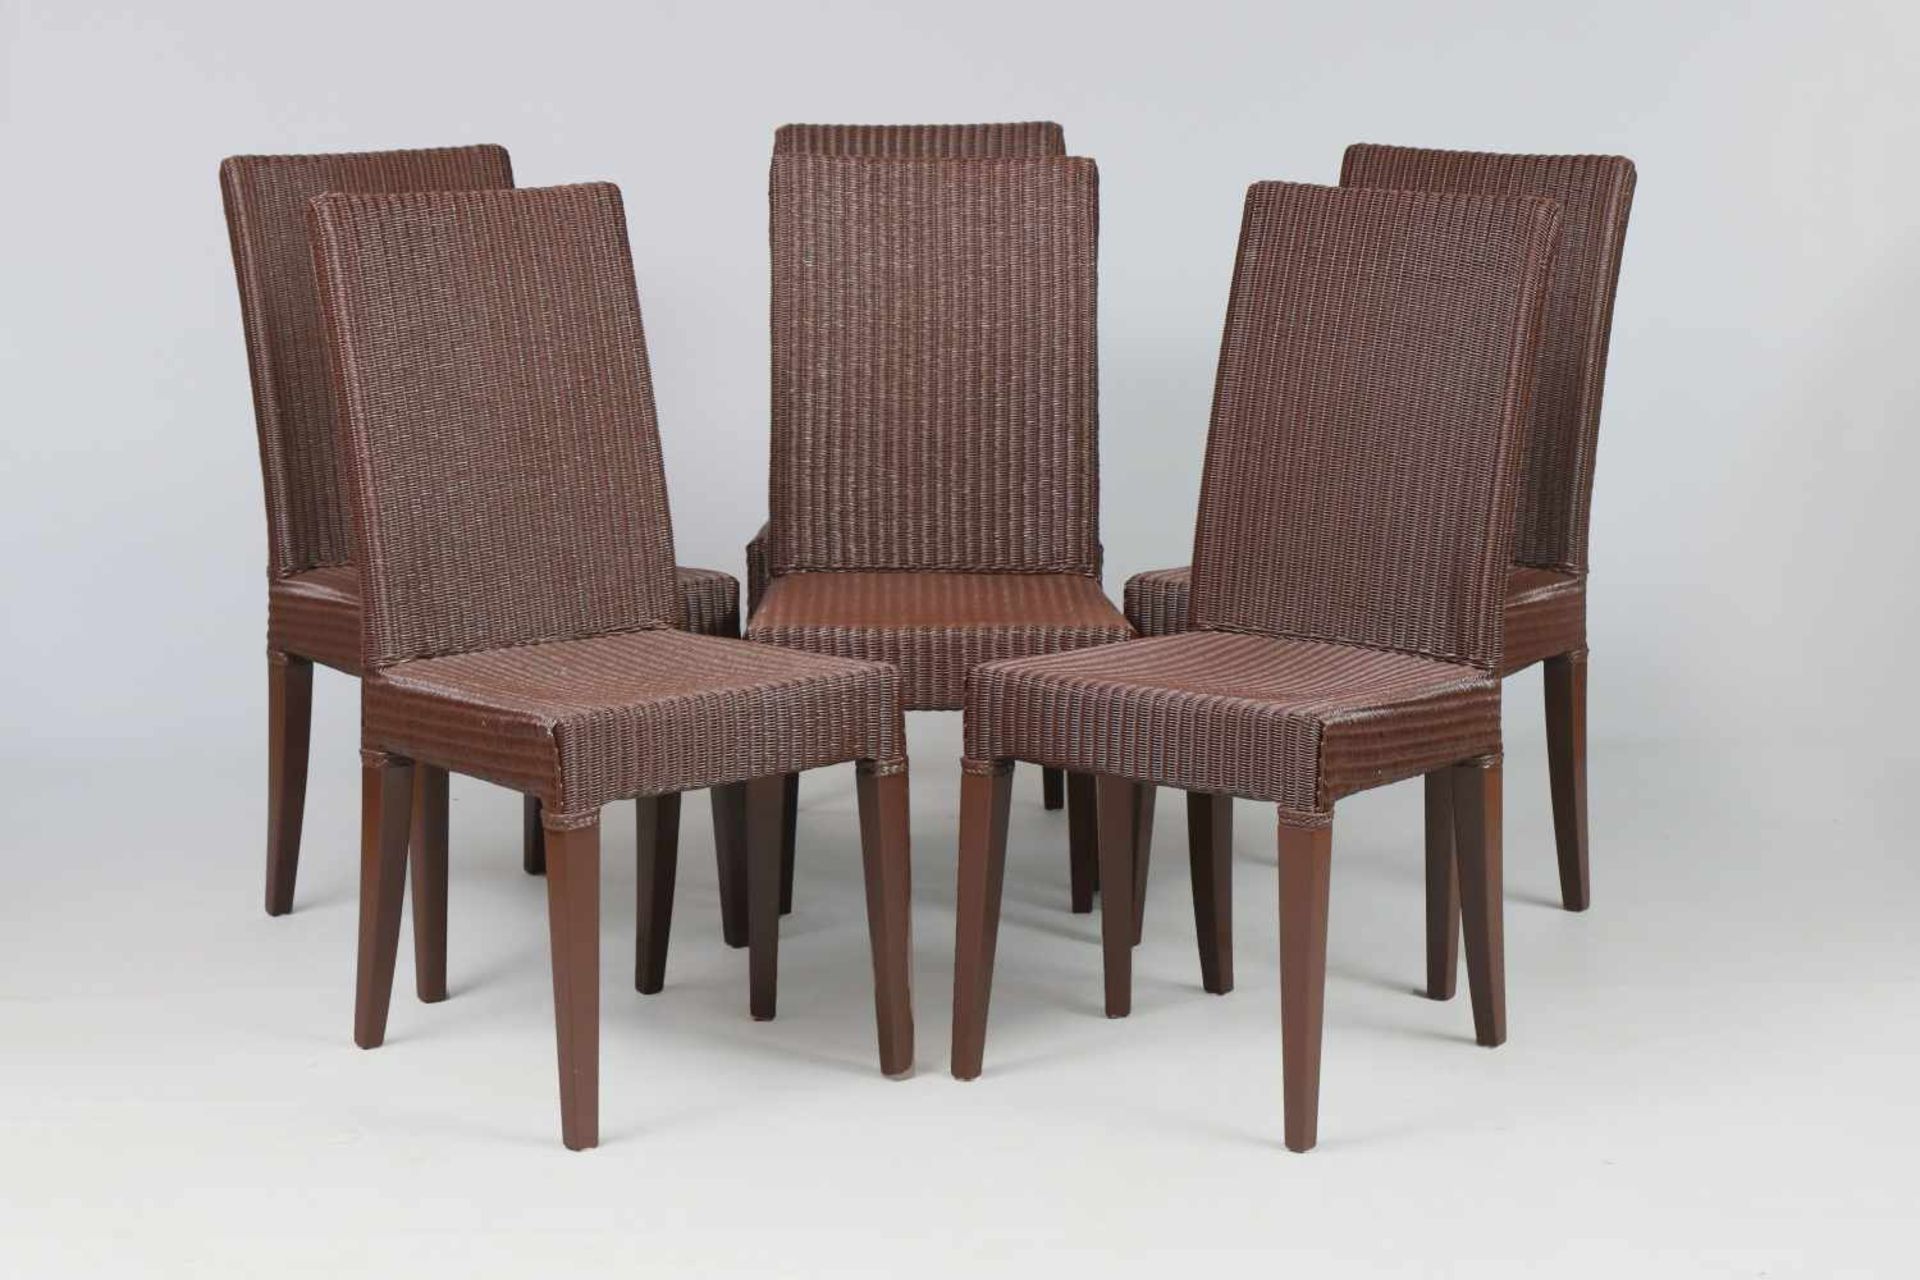 6 VINCENT SHEPARD Rattan-Stühleschokoladenbraun lackiertes Rattangeflecht, Vierkantbeine, Holz,